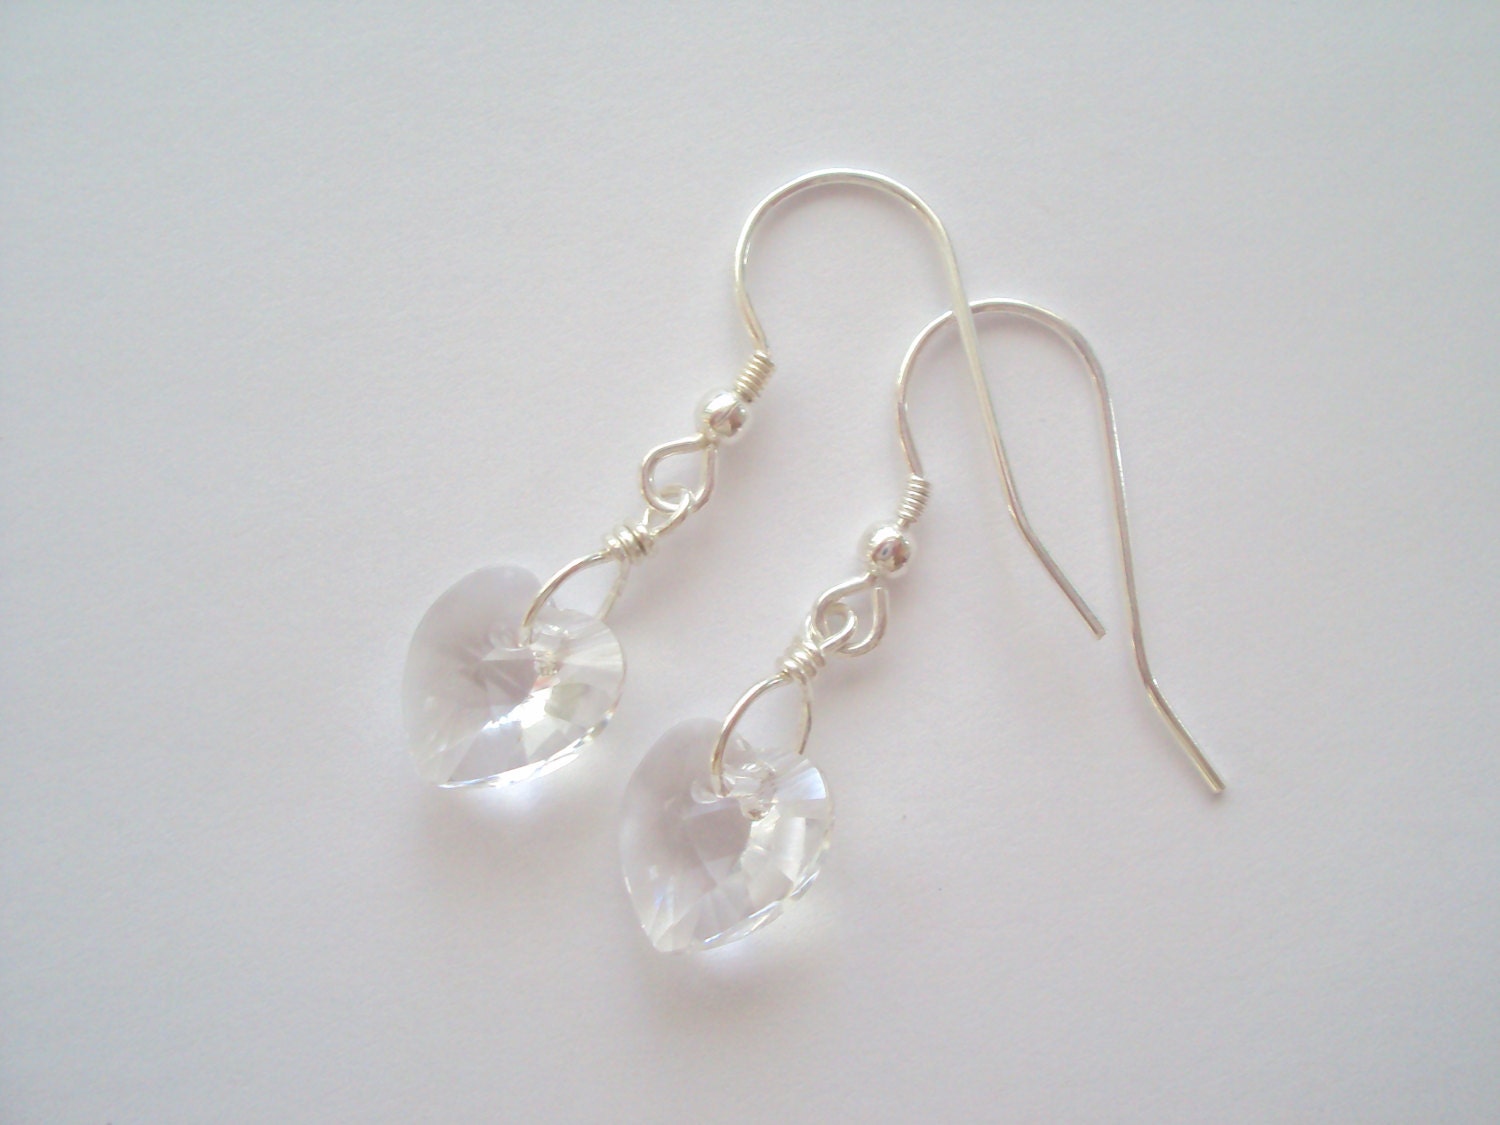 Swarovski Crystal Heart earrings in sterling by SparkleJungle